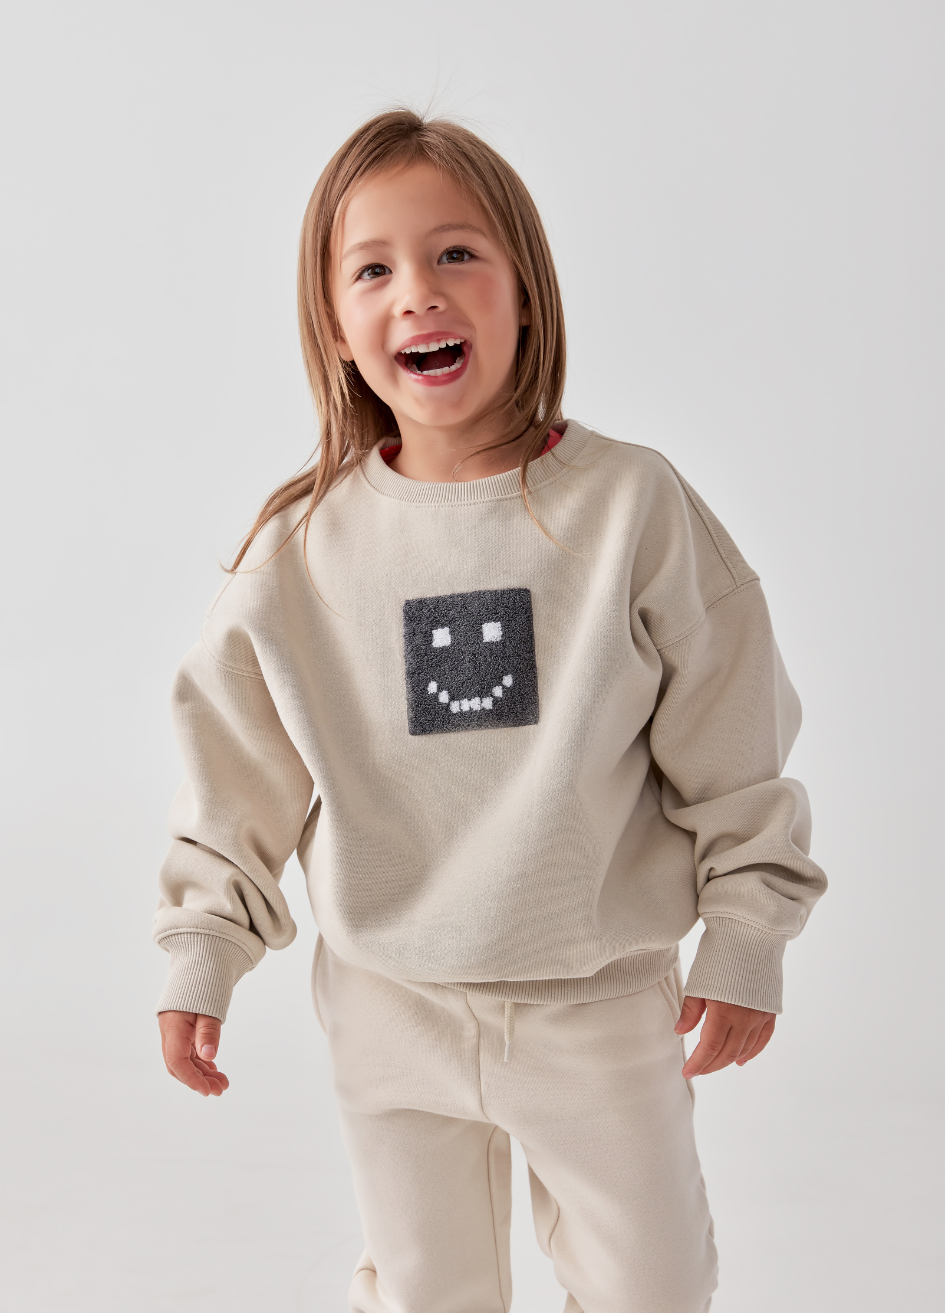 Kids "Pixel" Taupe Sweatshirt